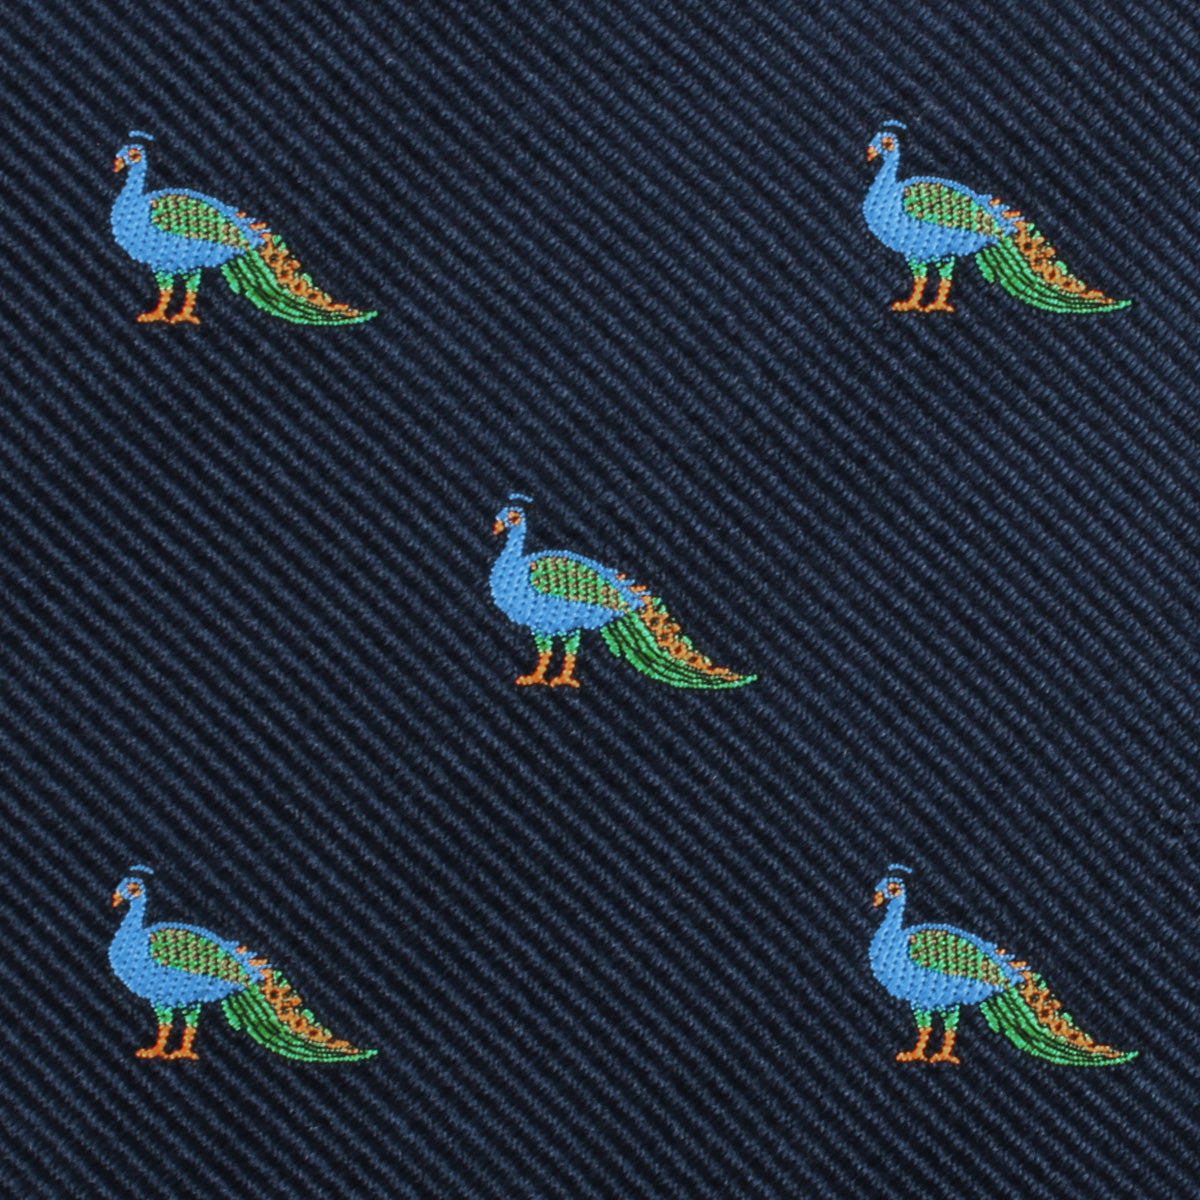 Java Peacock Skinny Tie Fabric